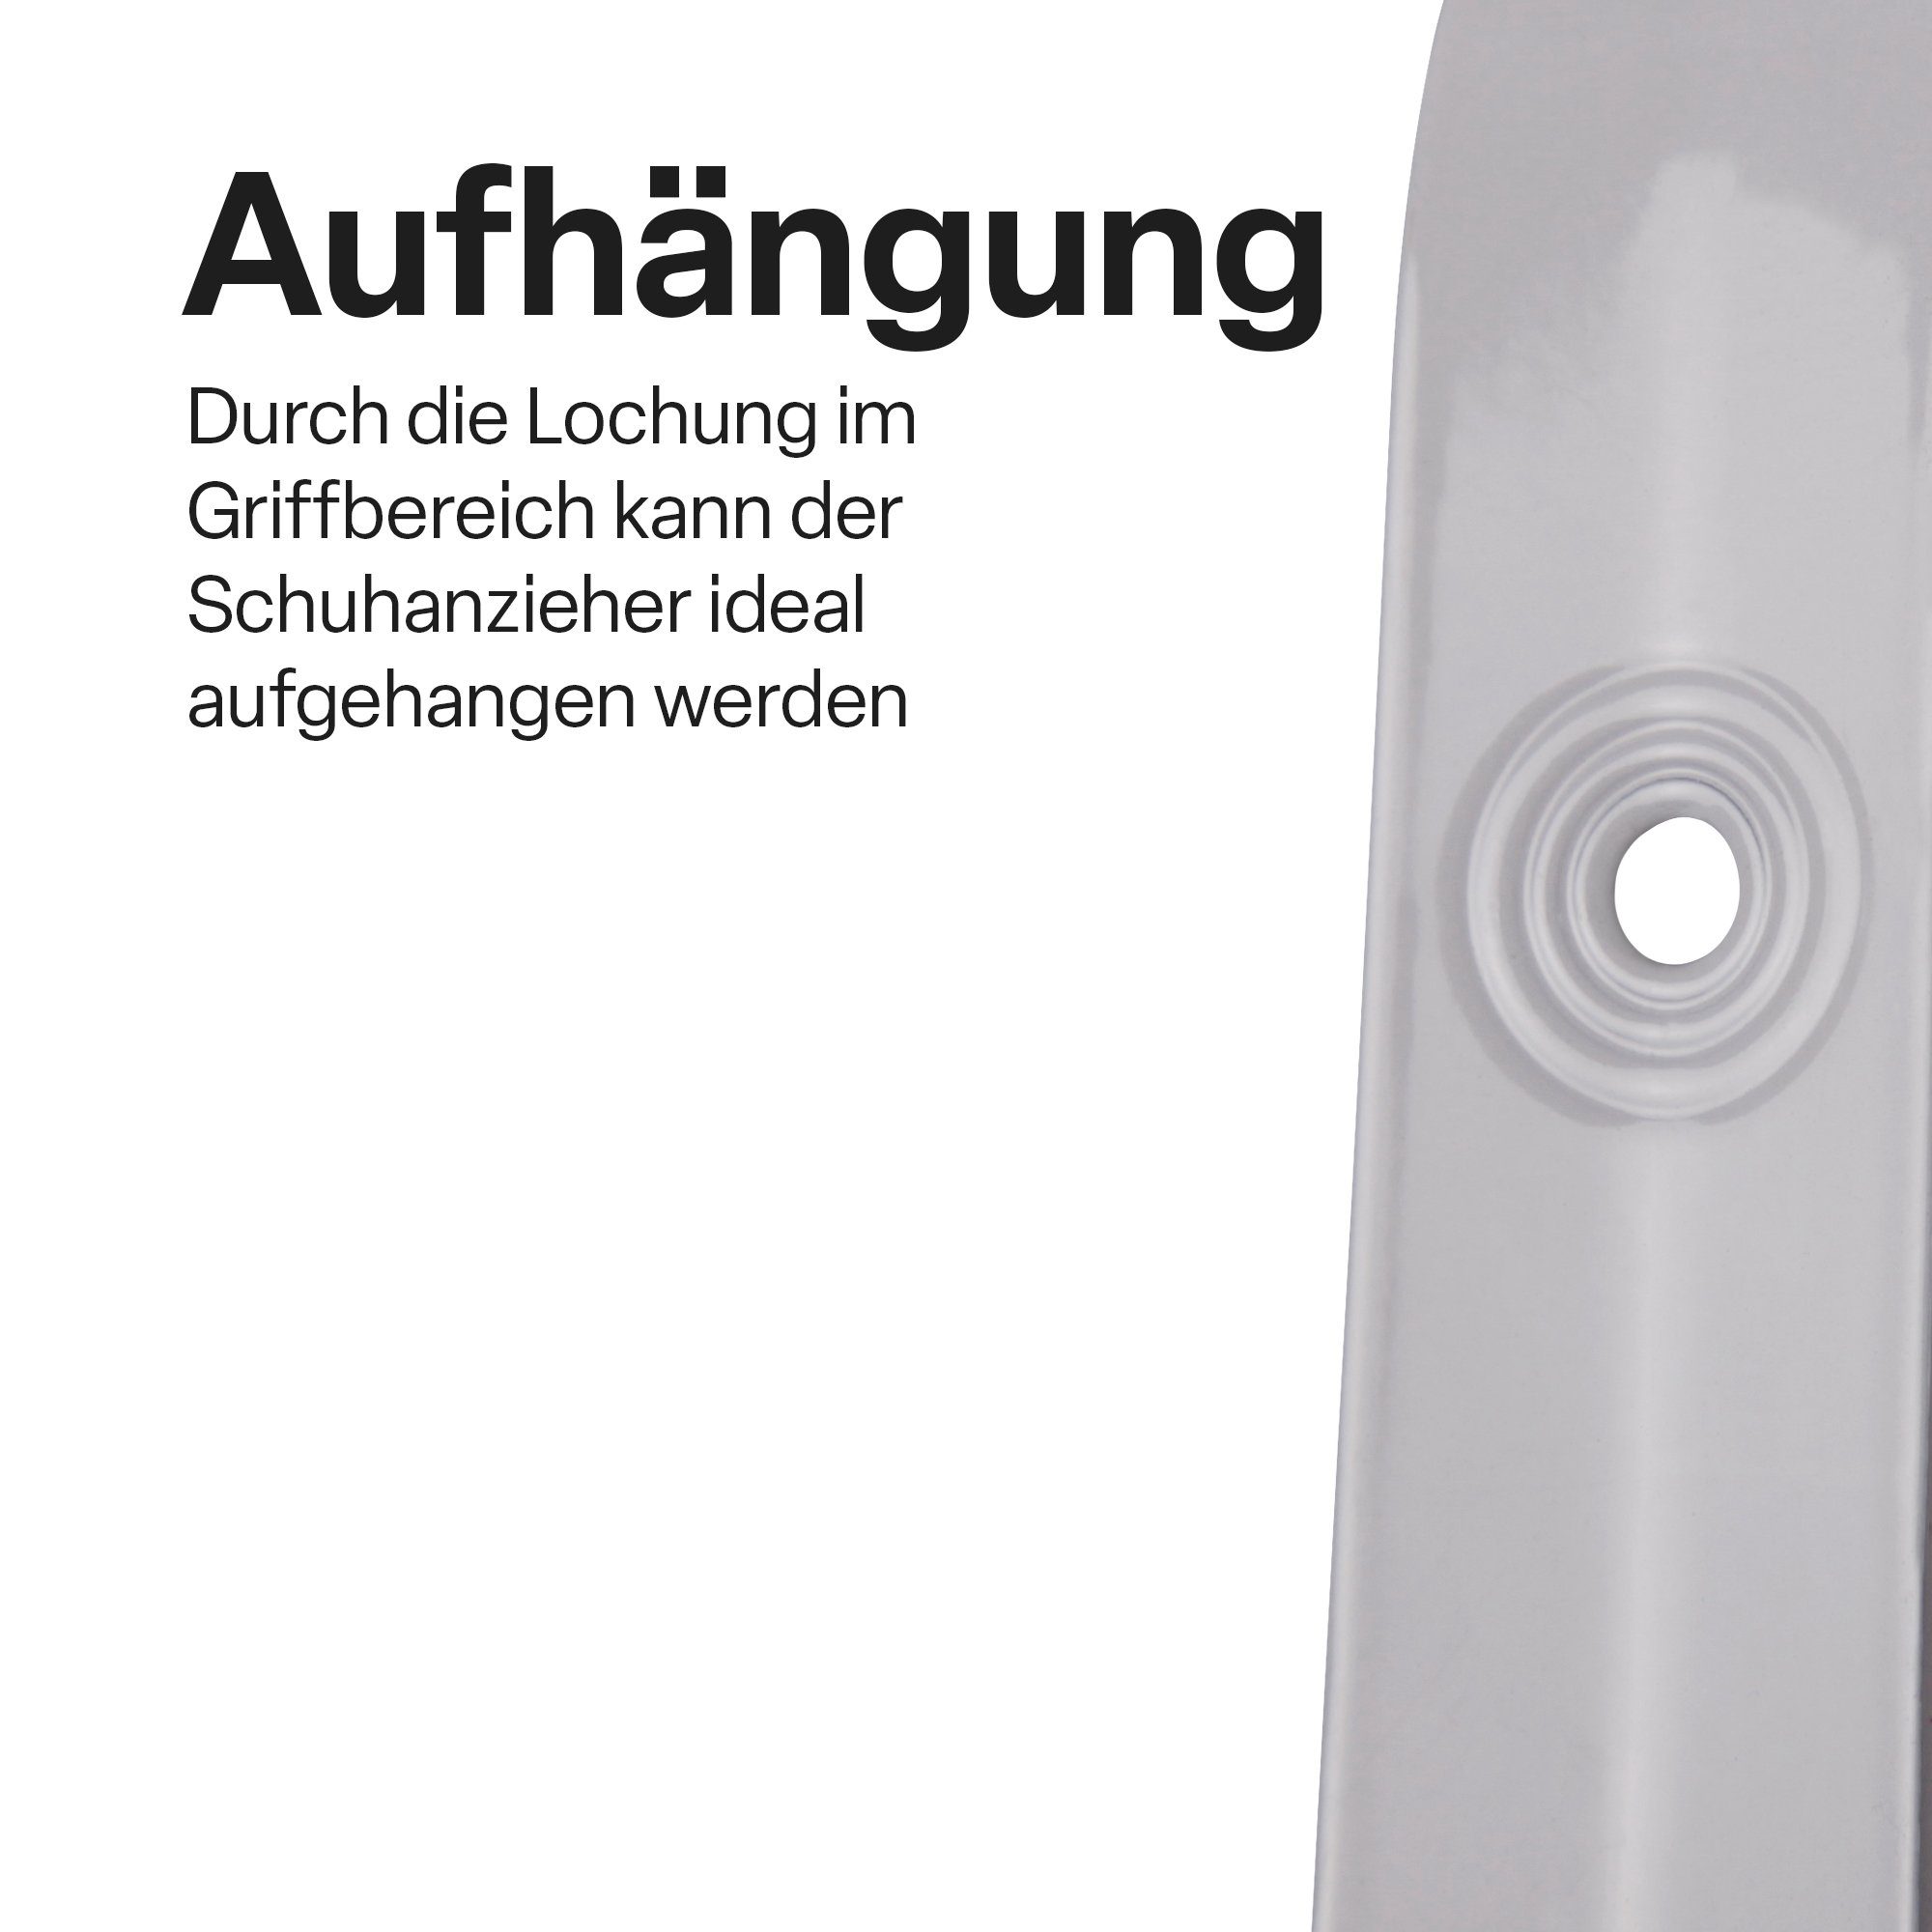 XXL Schuhlöffel Bestlivings - Schuhlöffel (79cm), (2er Stabile Pack 2-tlg), Schuhanziehhilfe Metall Schuhanzieher - Weiß